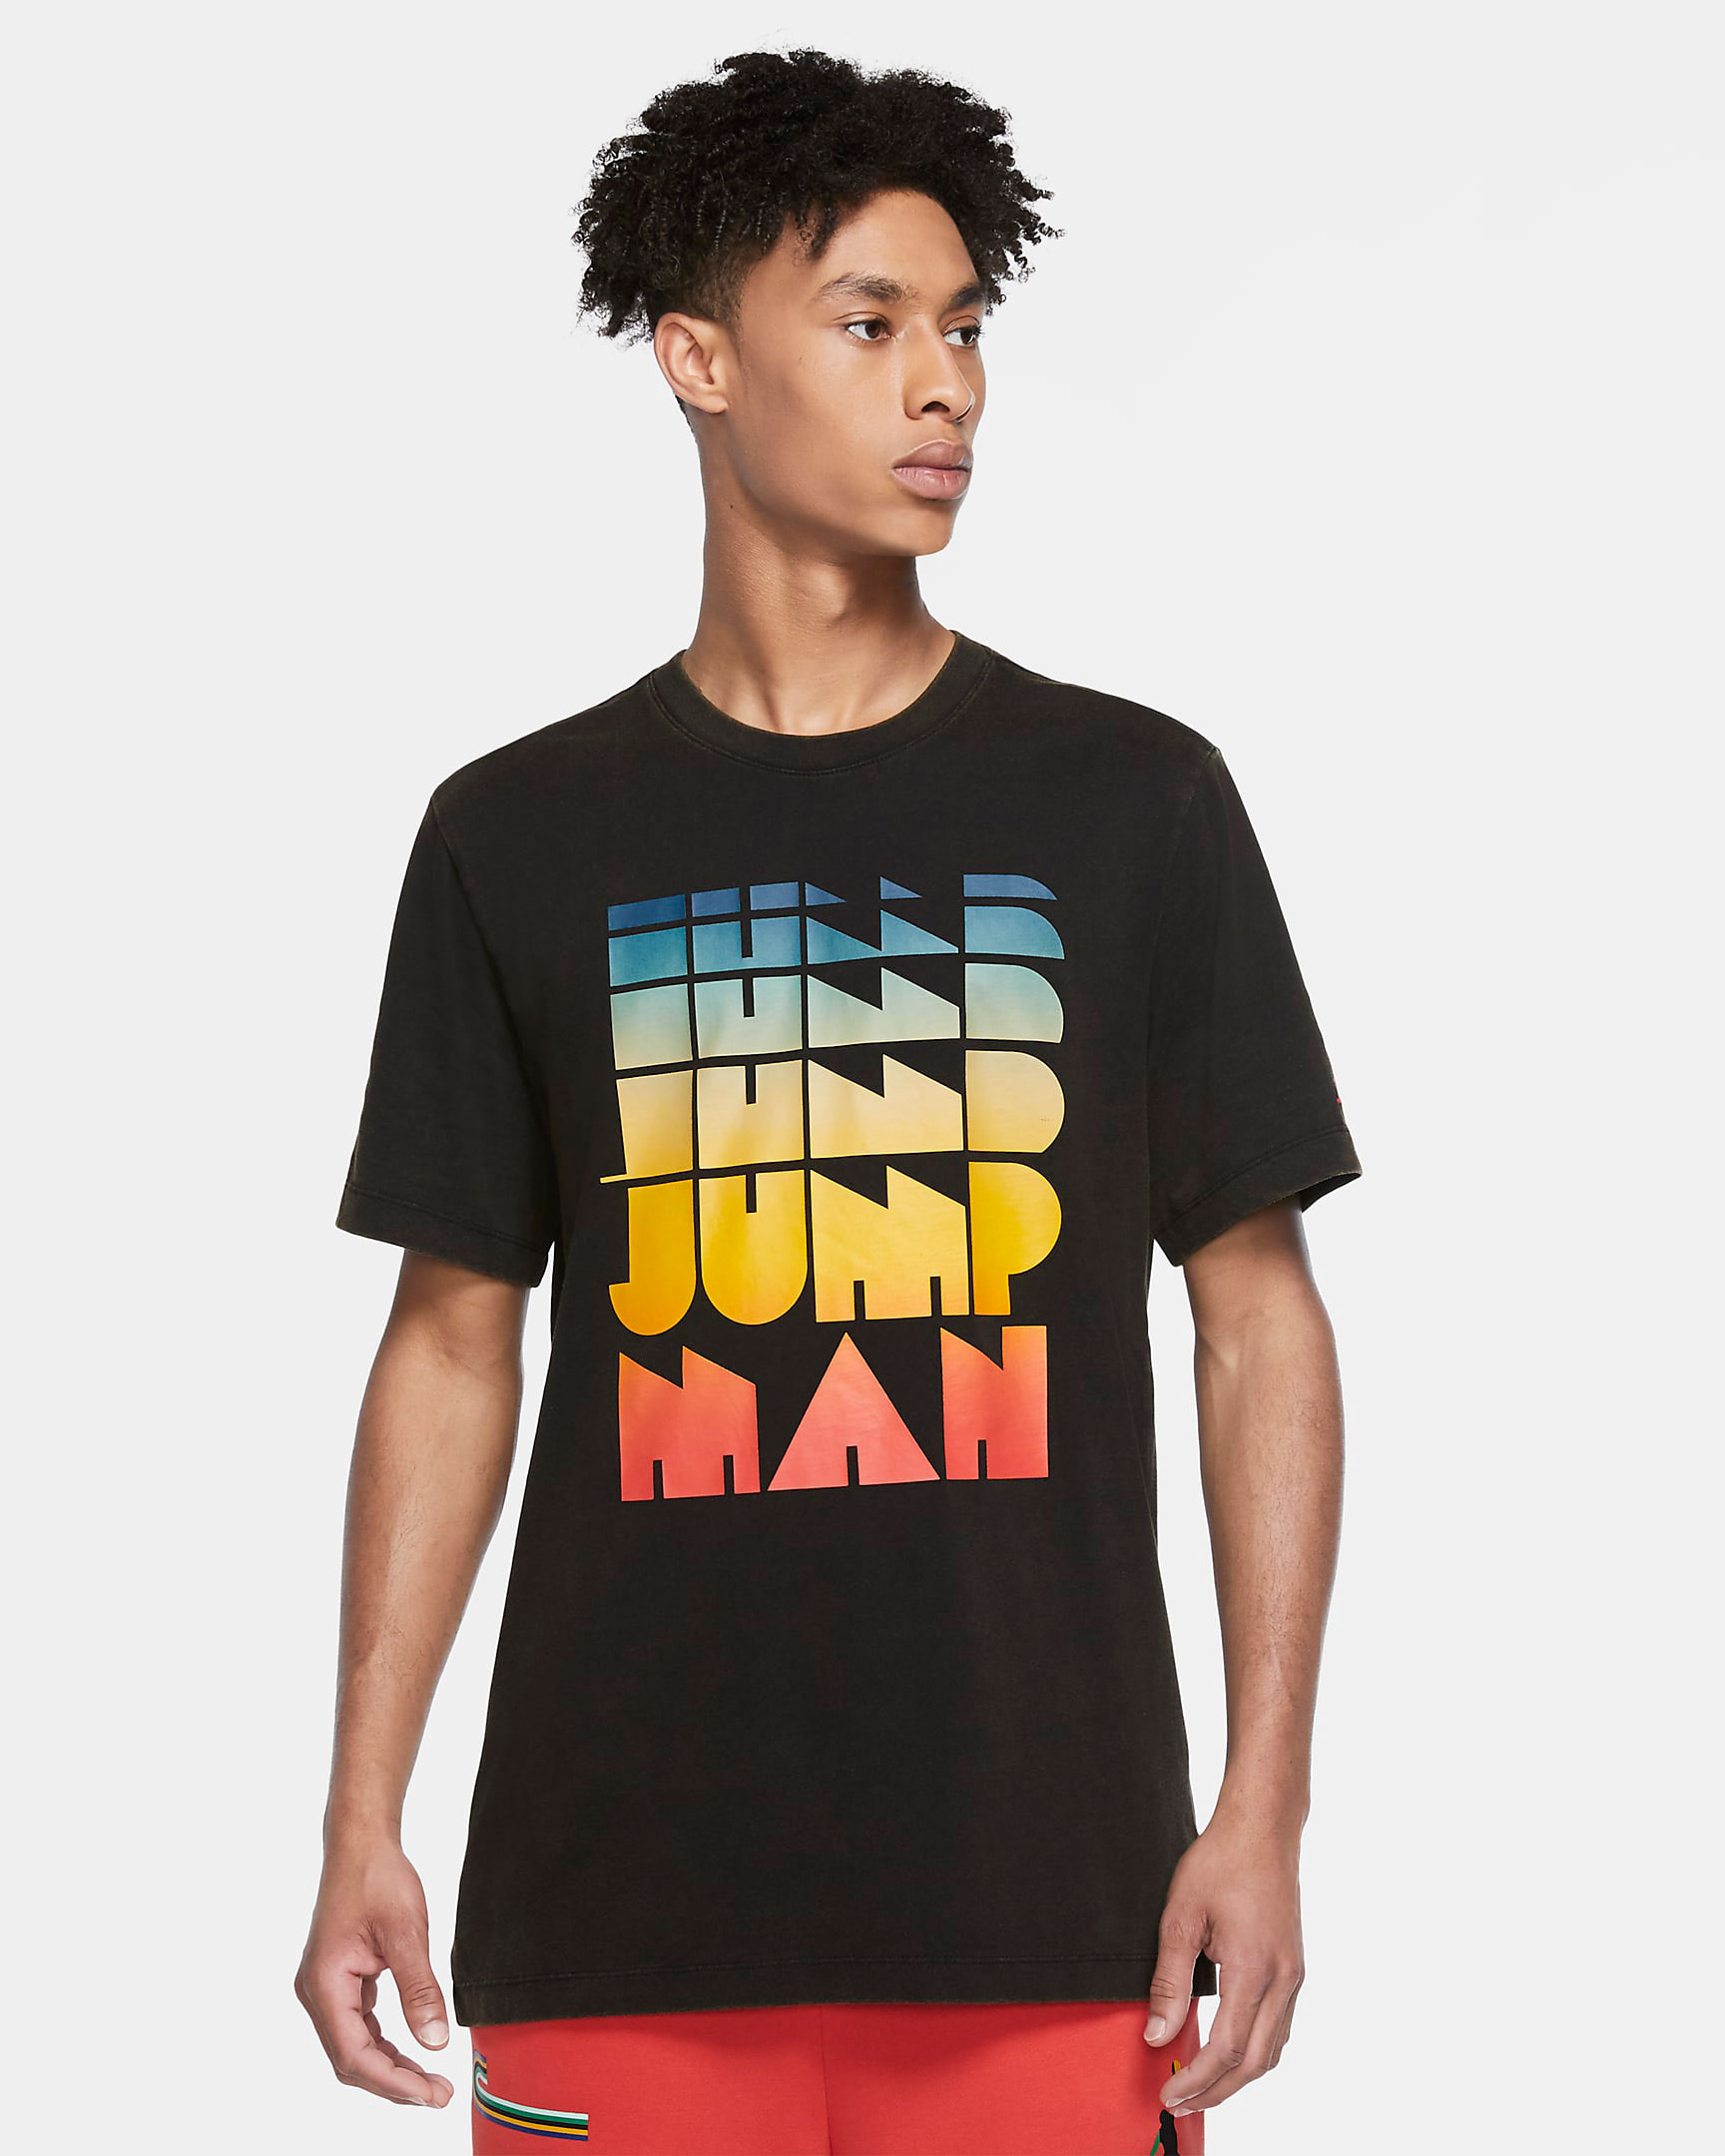 shirts to match jordan 1 bio hack